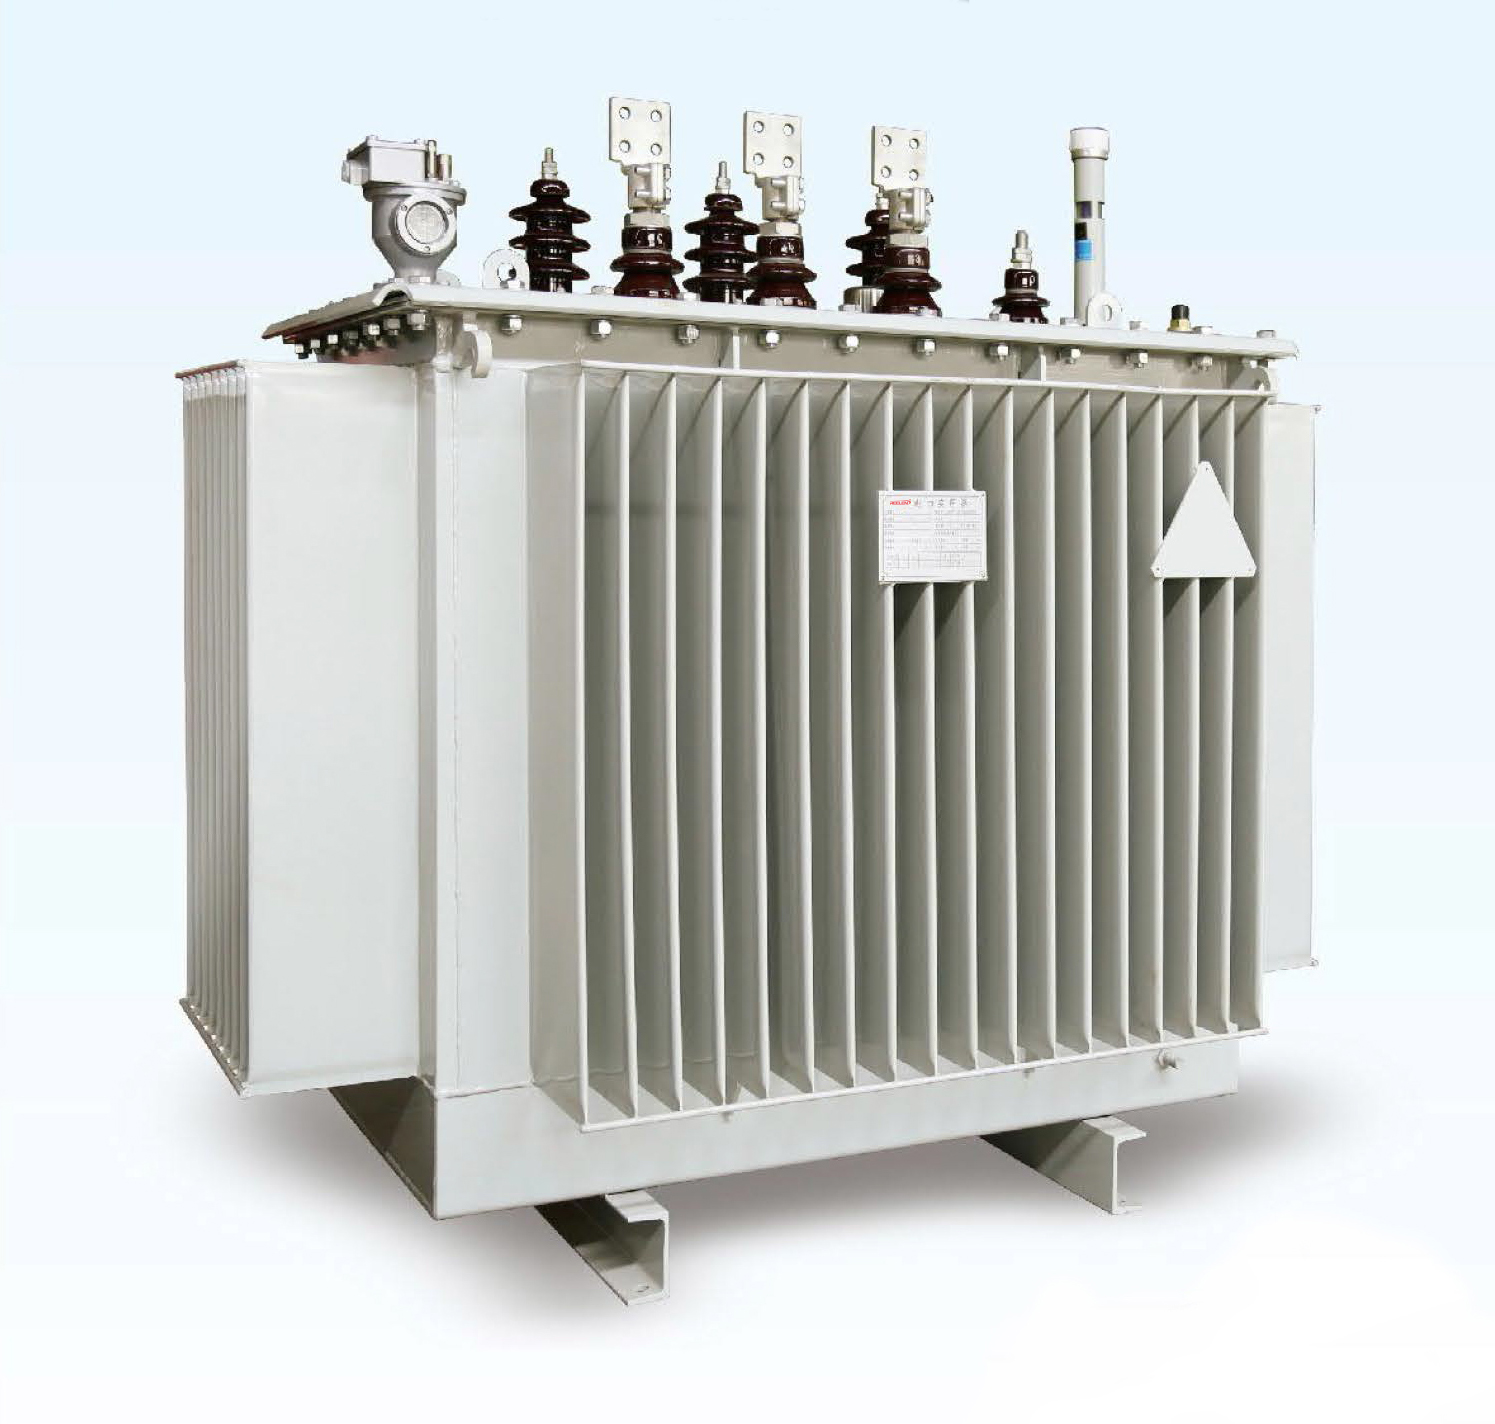 800kVA 10kV Oil Immersed Power Transformer (Model: S13-M-800)